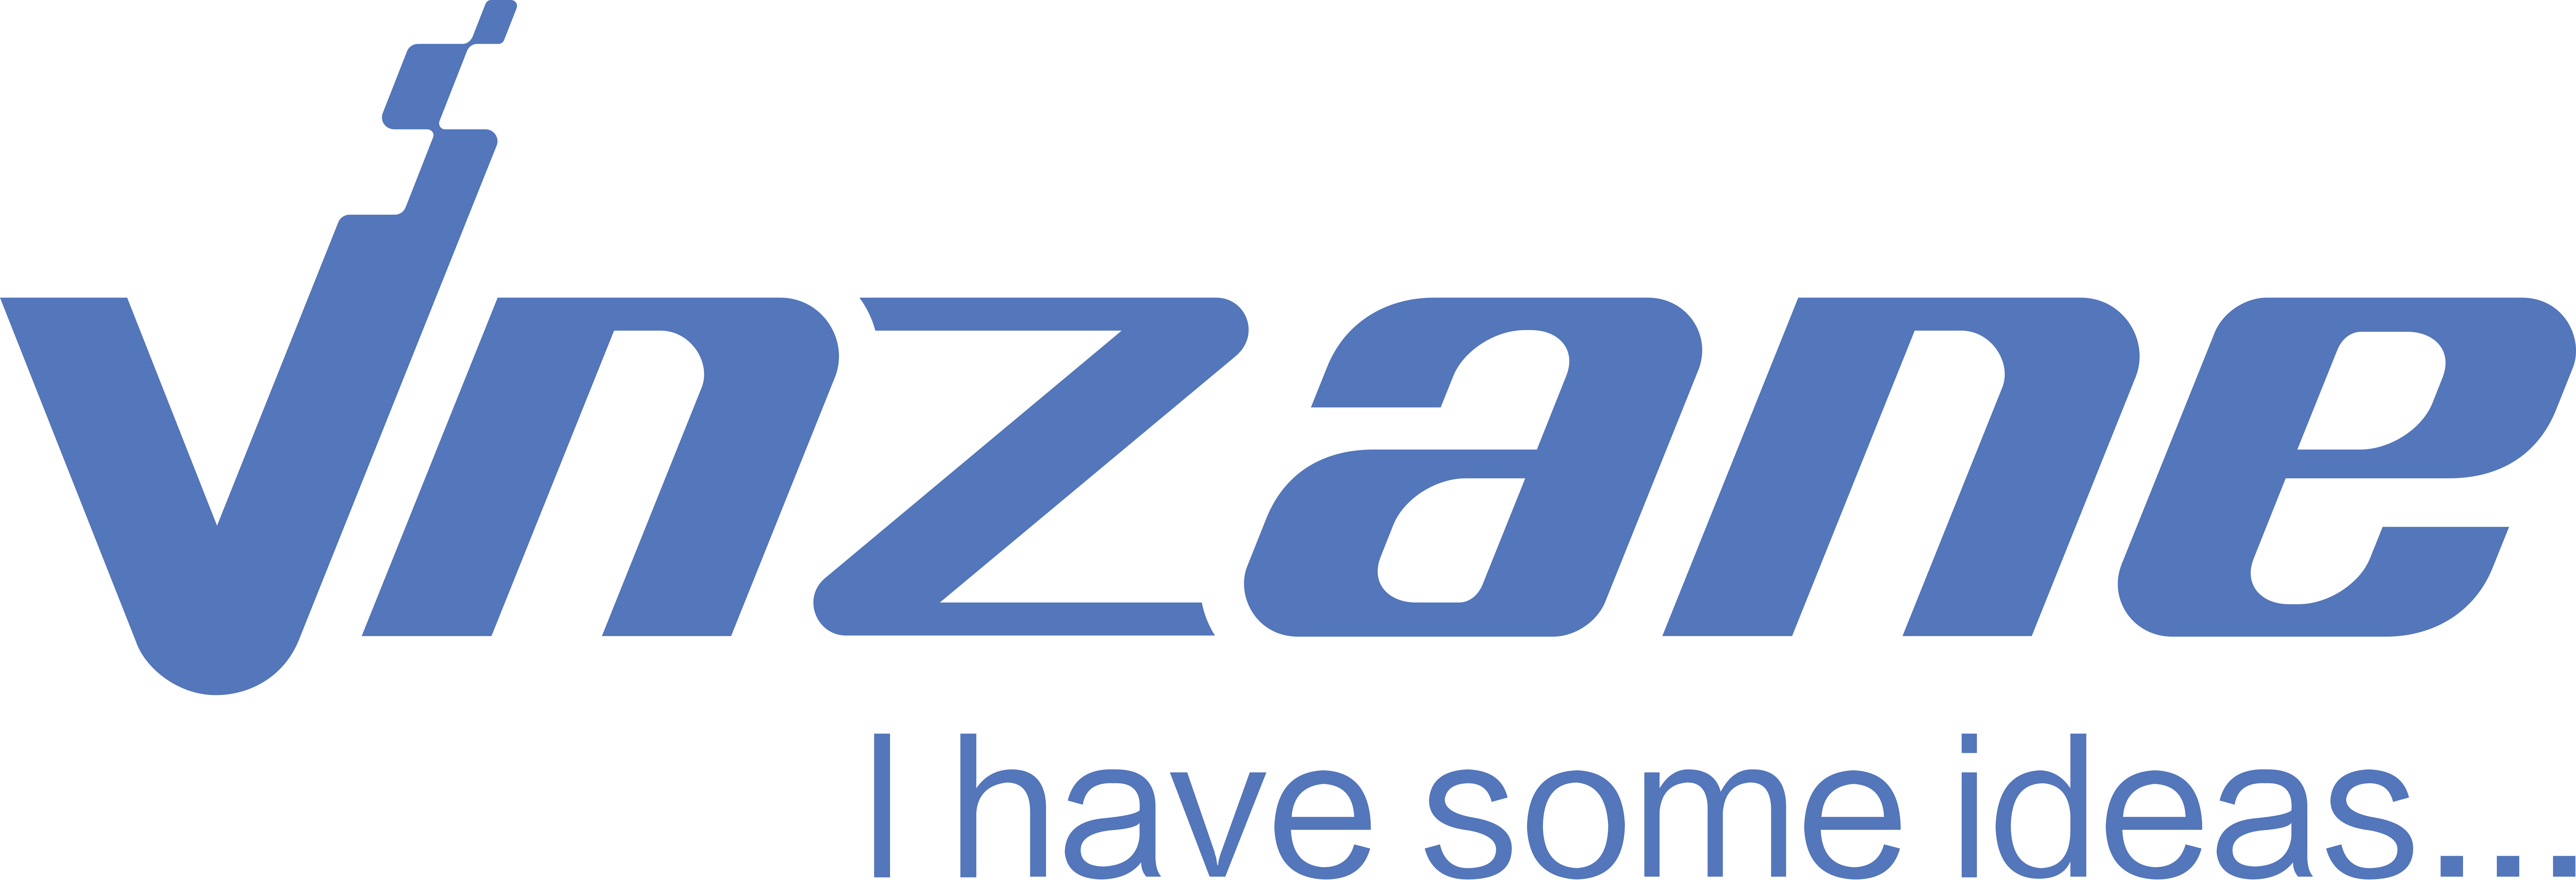 Company Logo For vnzane'